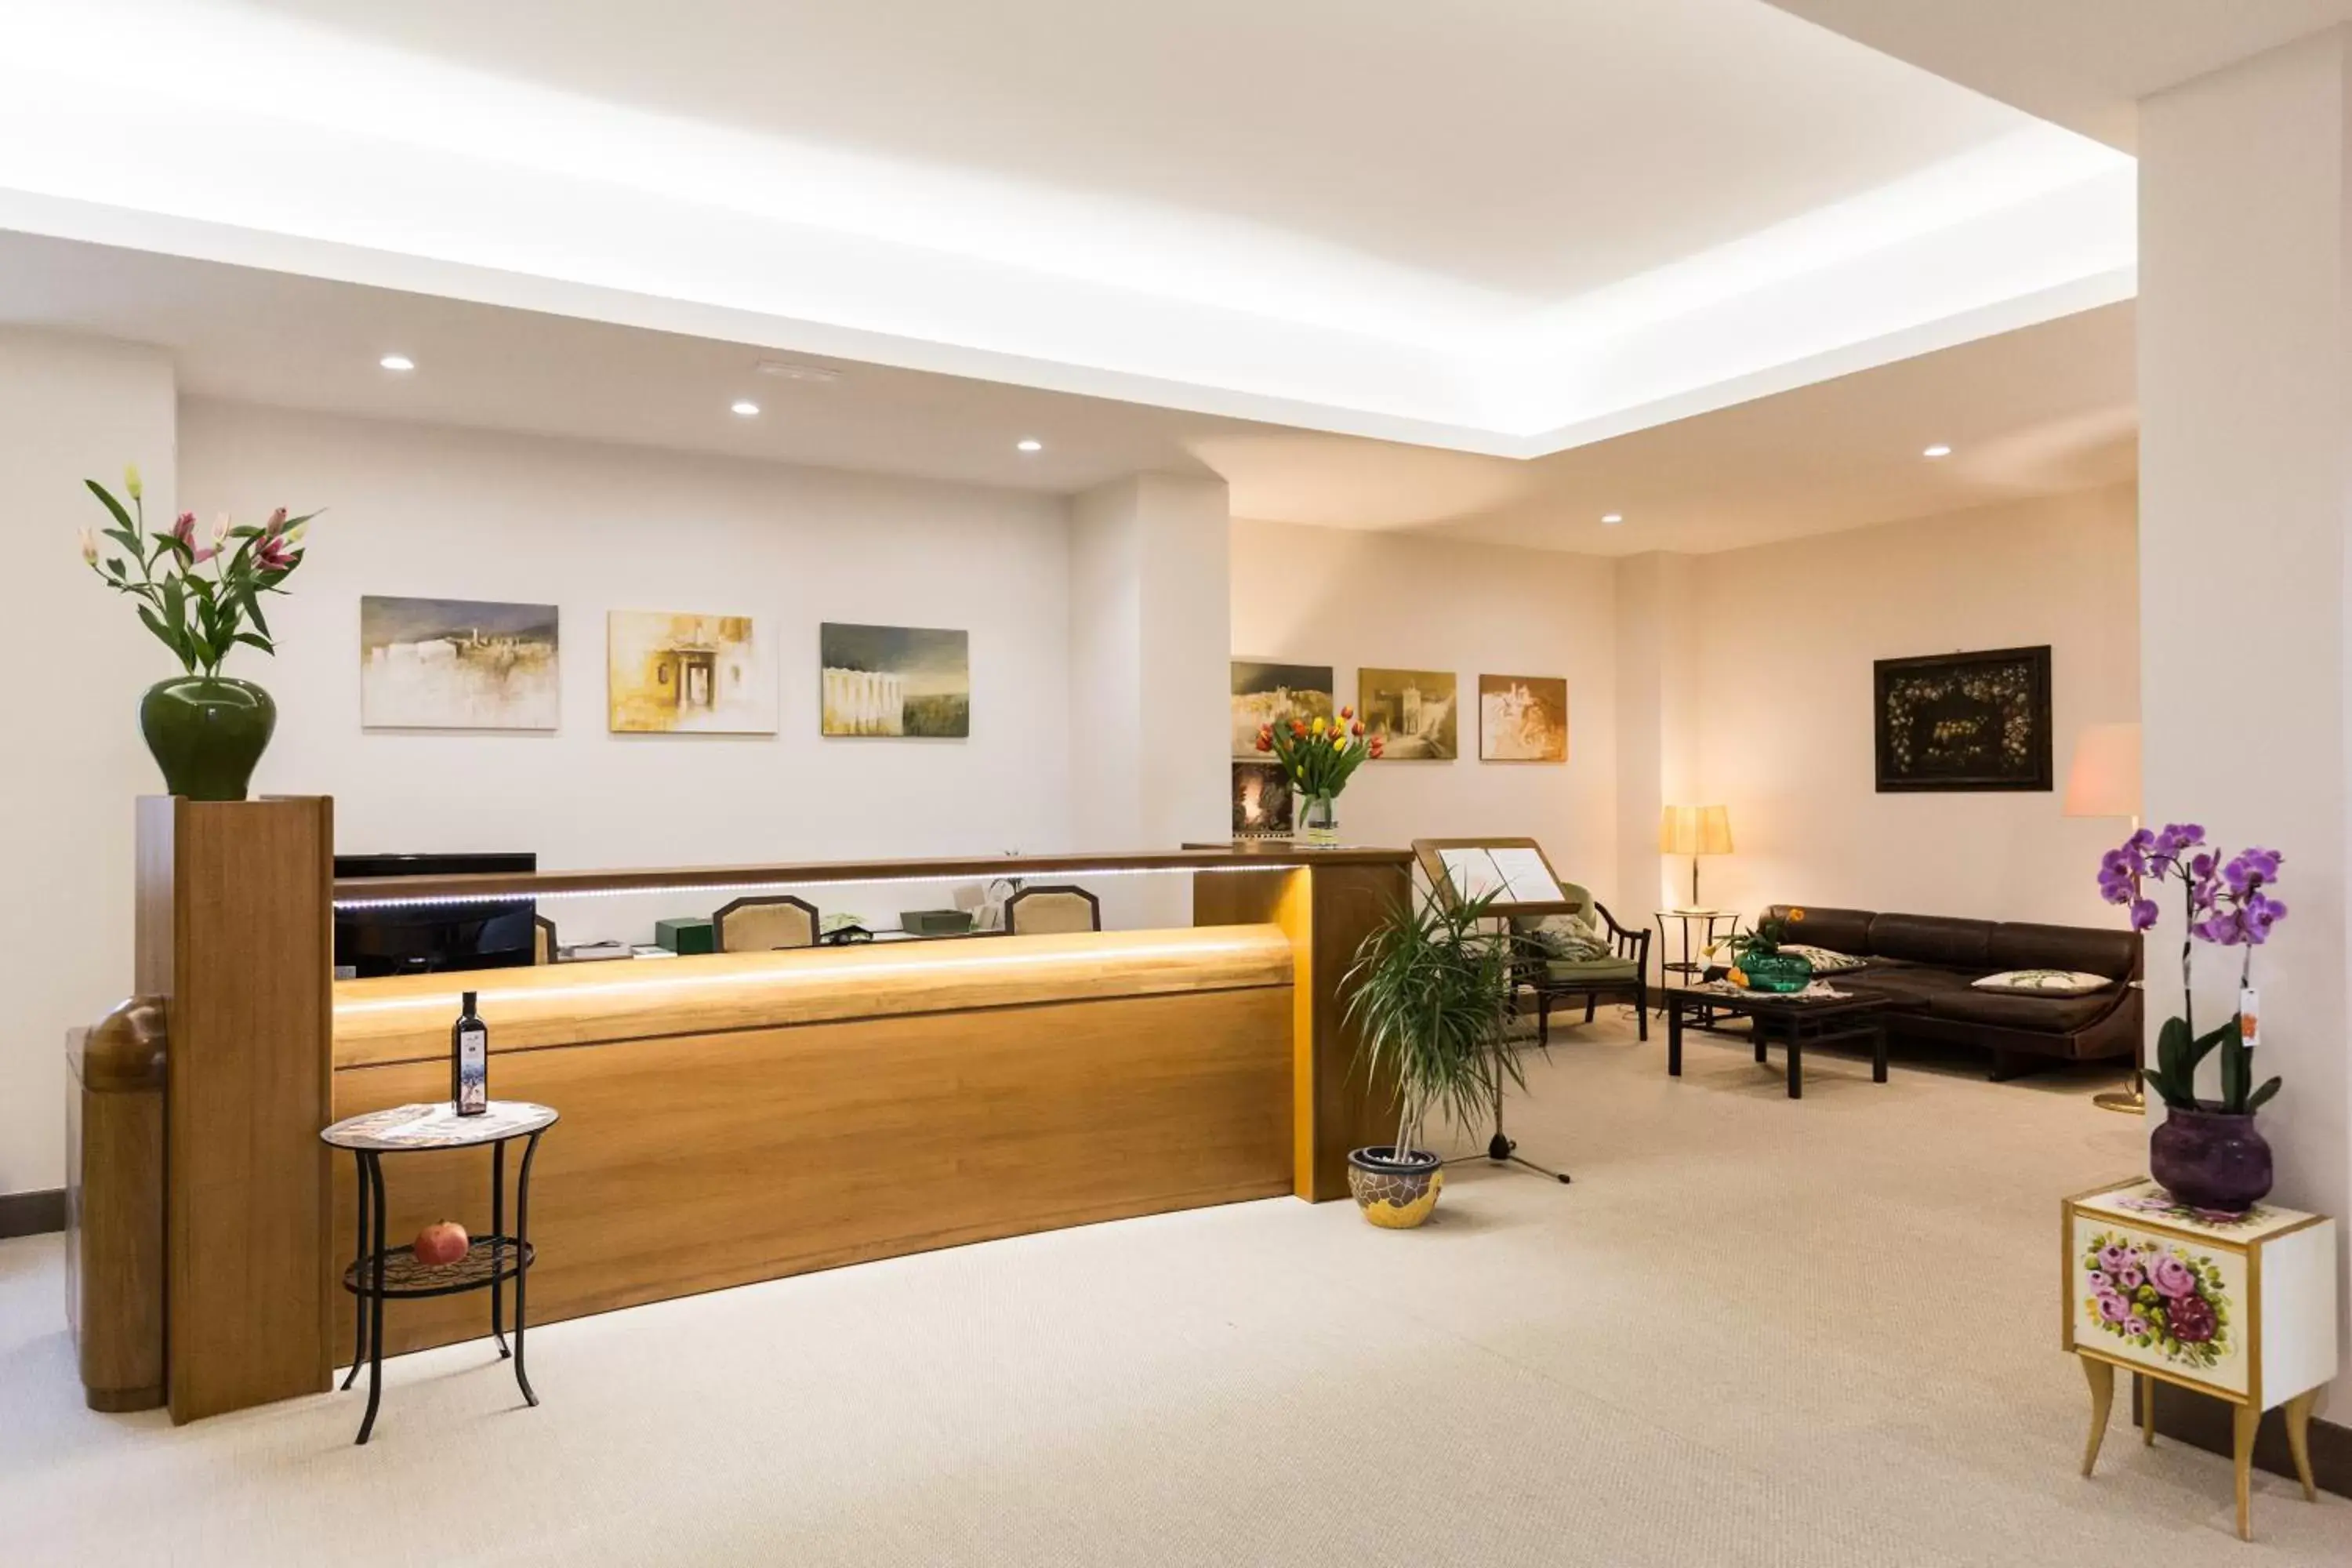 Lobby or reception, Lobby/Reception in Villa Cavalletti Appartamenti